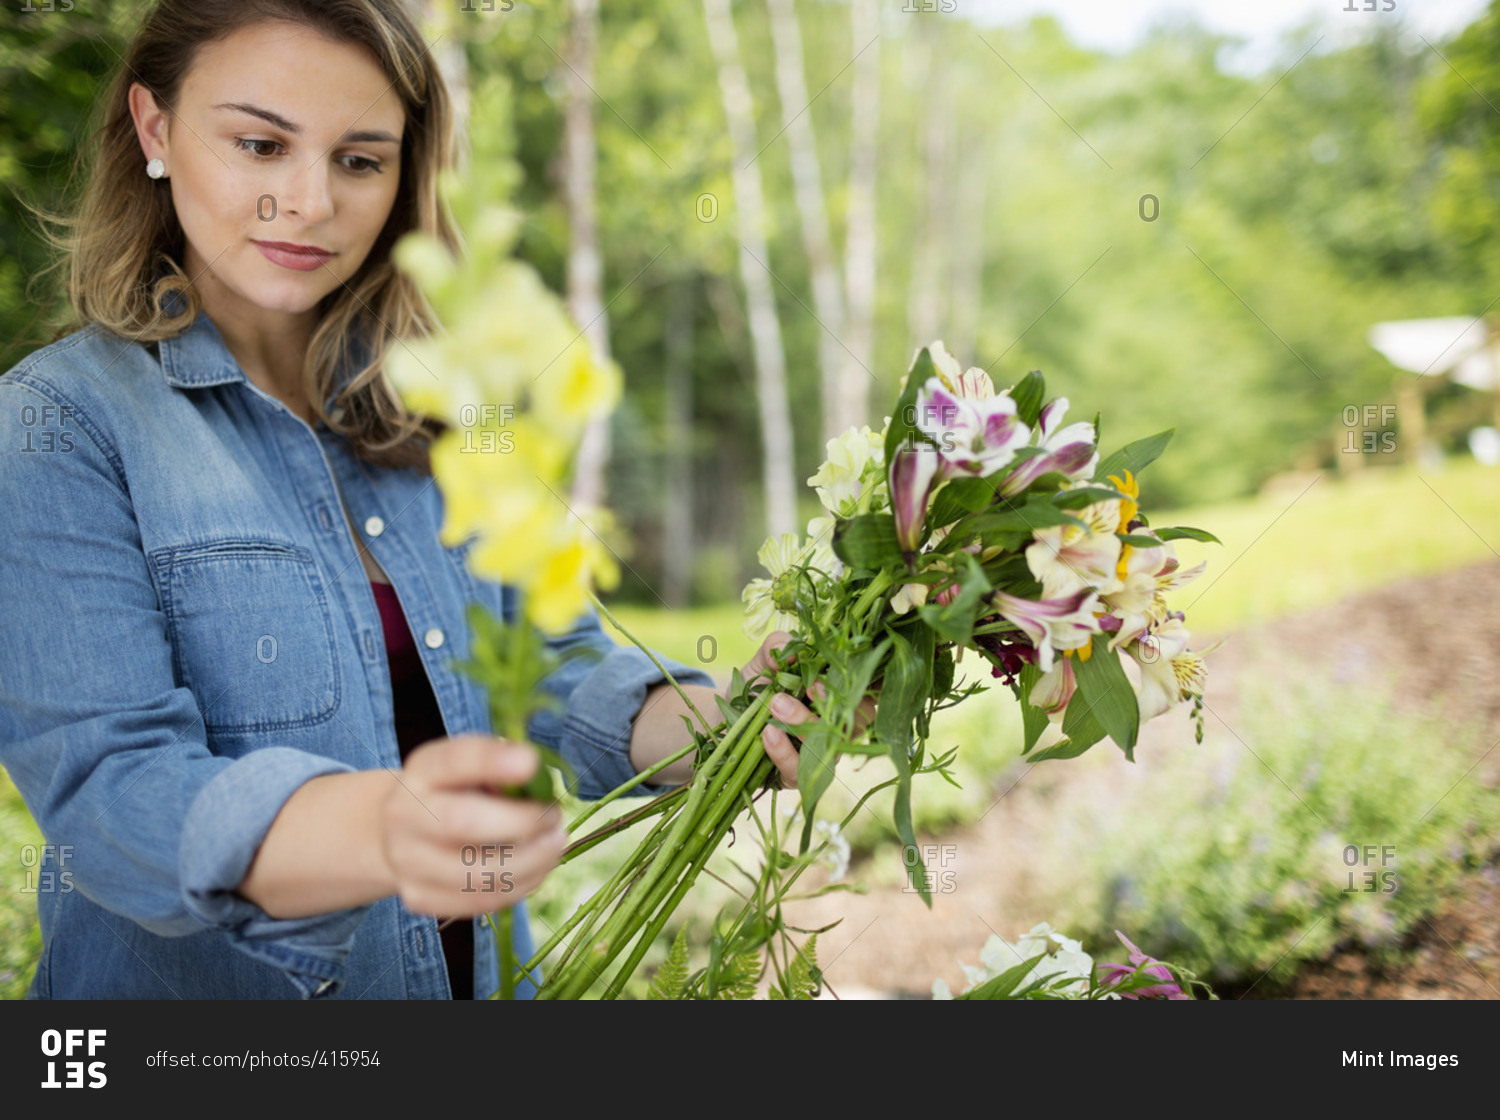 A woman holding a bunch of summer garden flowers